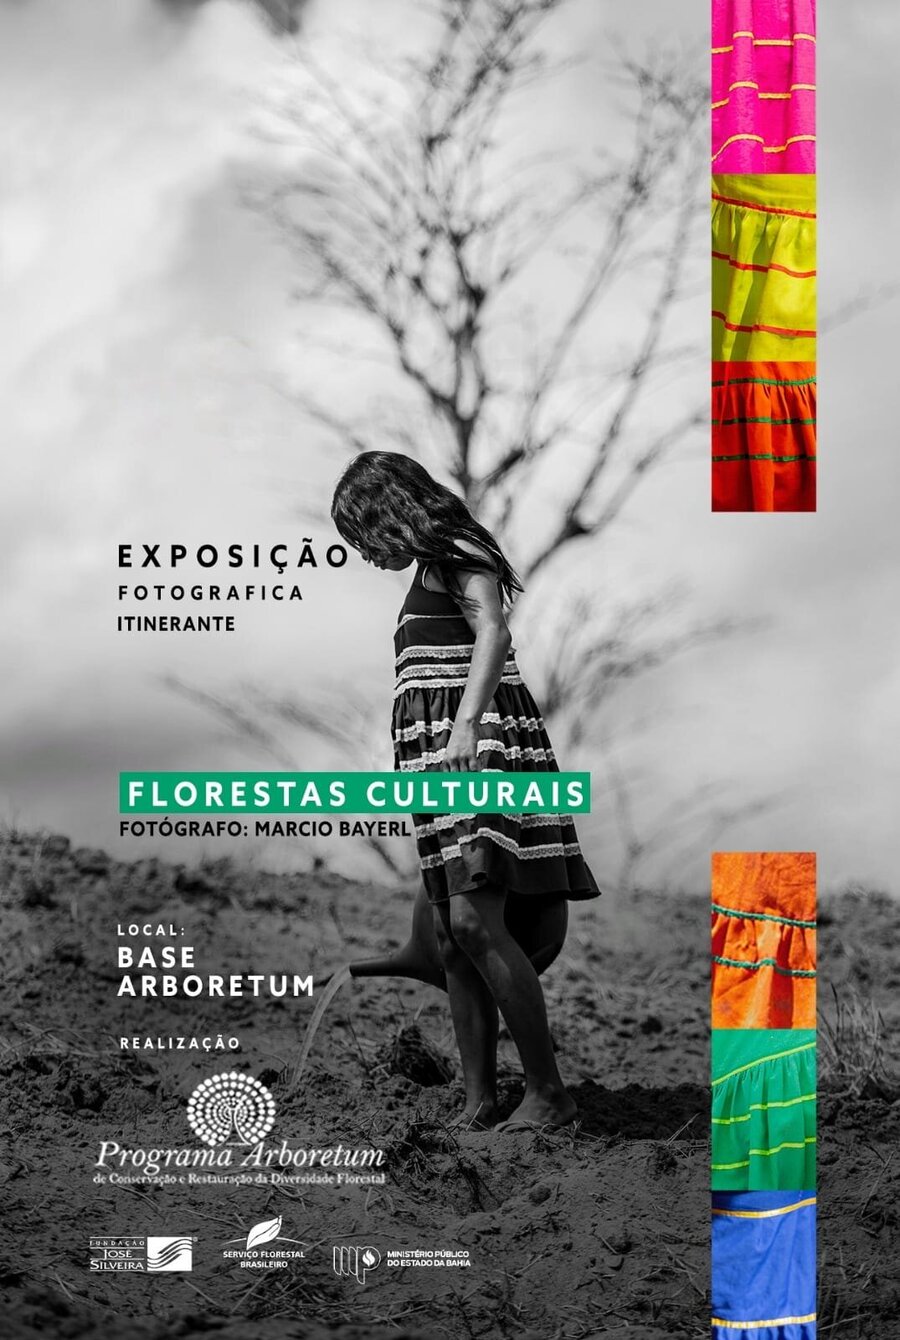 Programa Arboretum: Exposição Fotográfica Florestas Culturais abrirá visitação pública